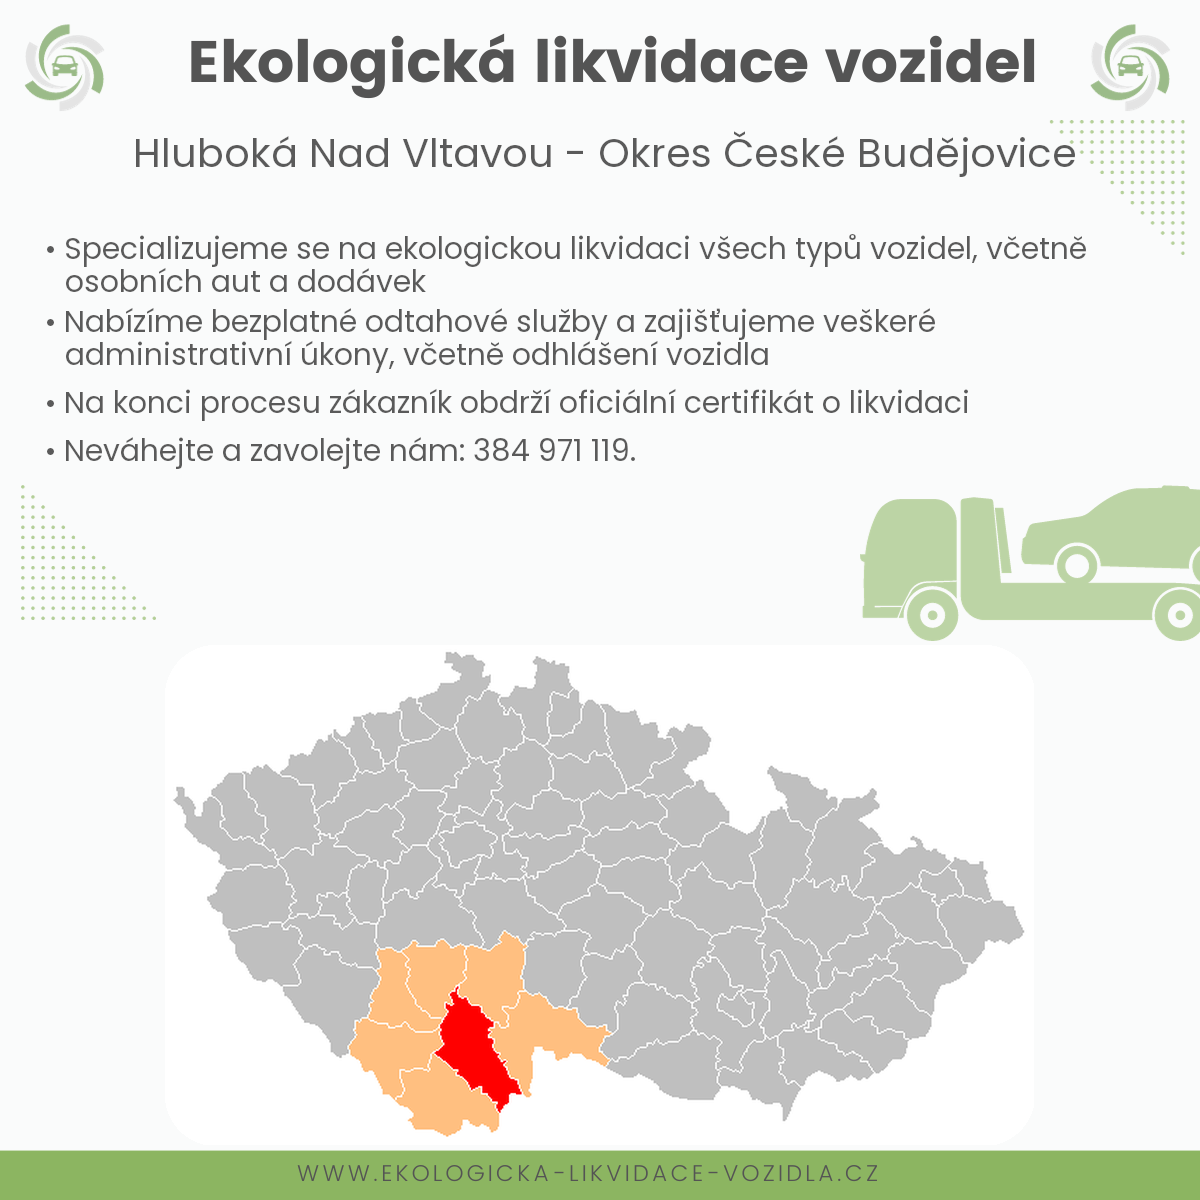 likvidace vozidel - Hluboká nad Vltavou